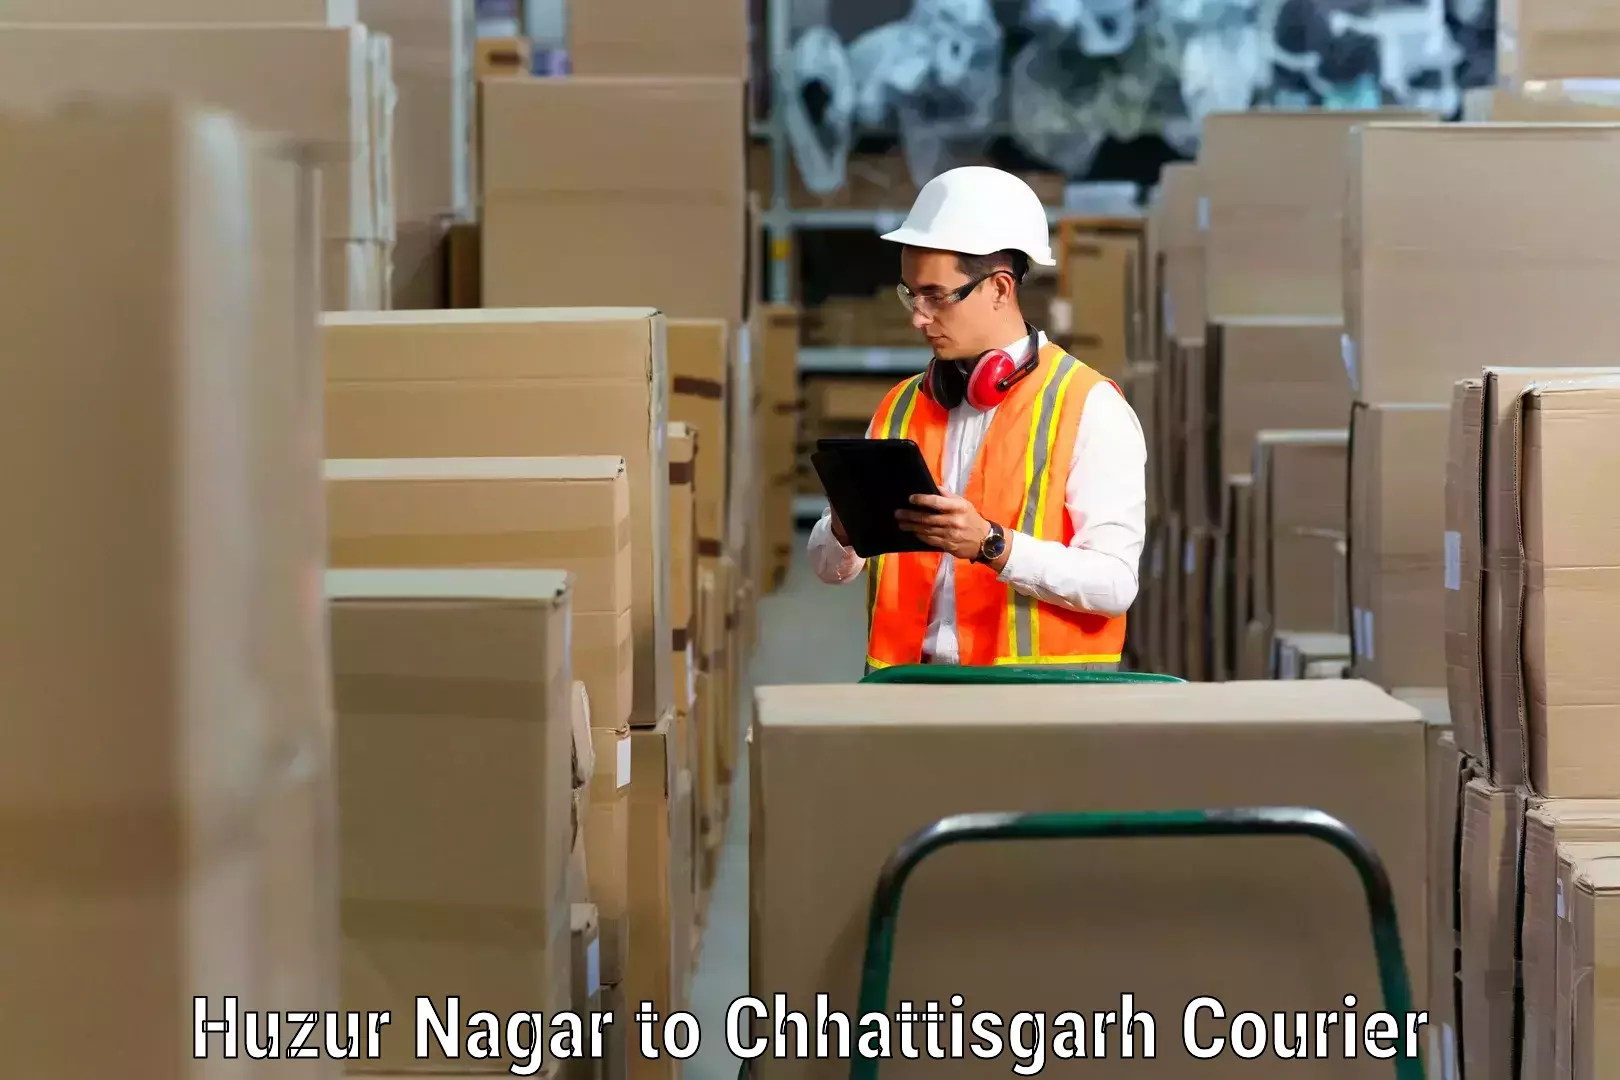 Household moving experts Huzur Nagar to Bhatgaon